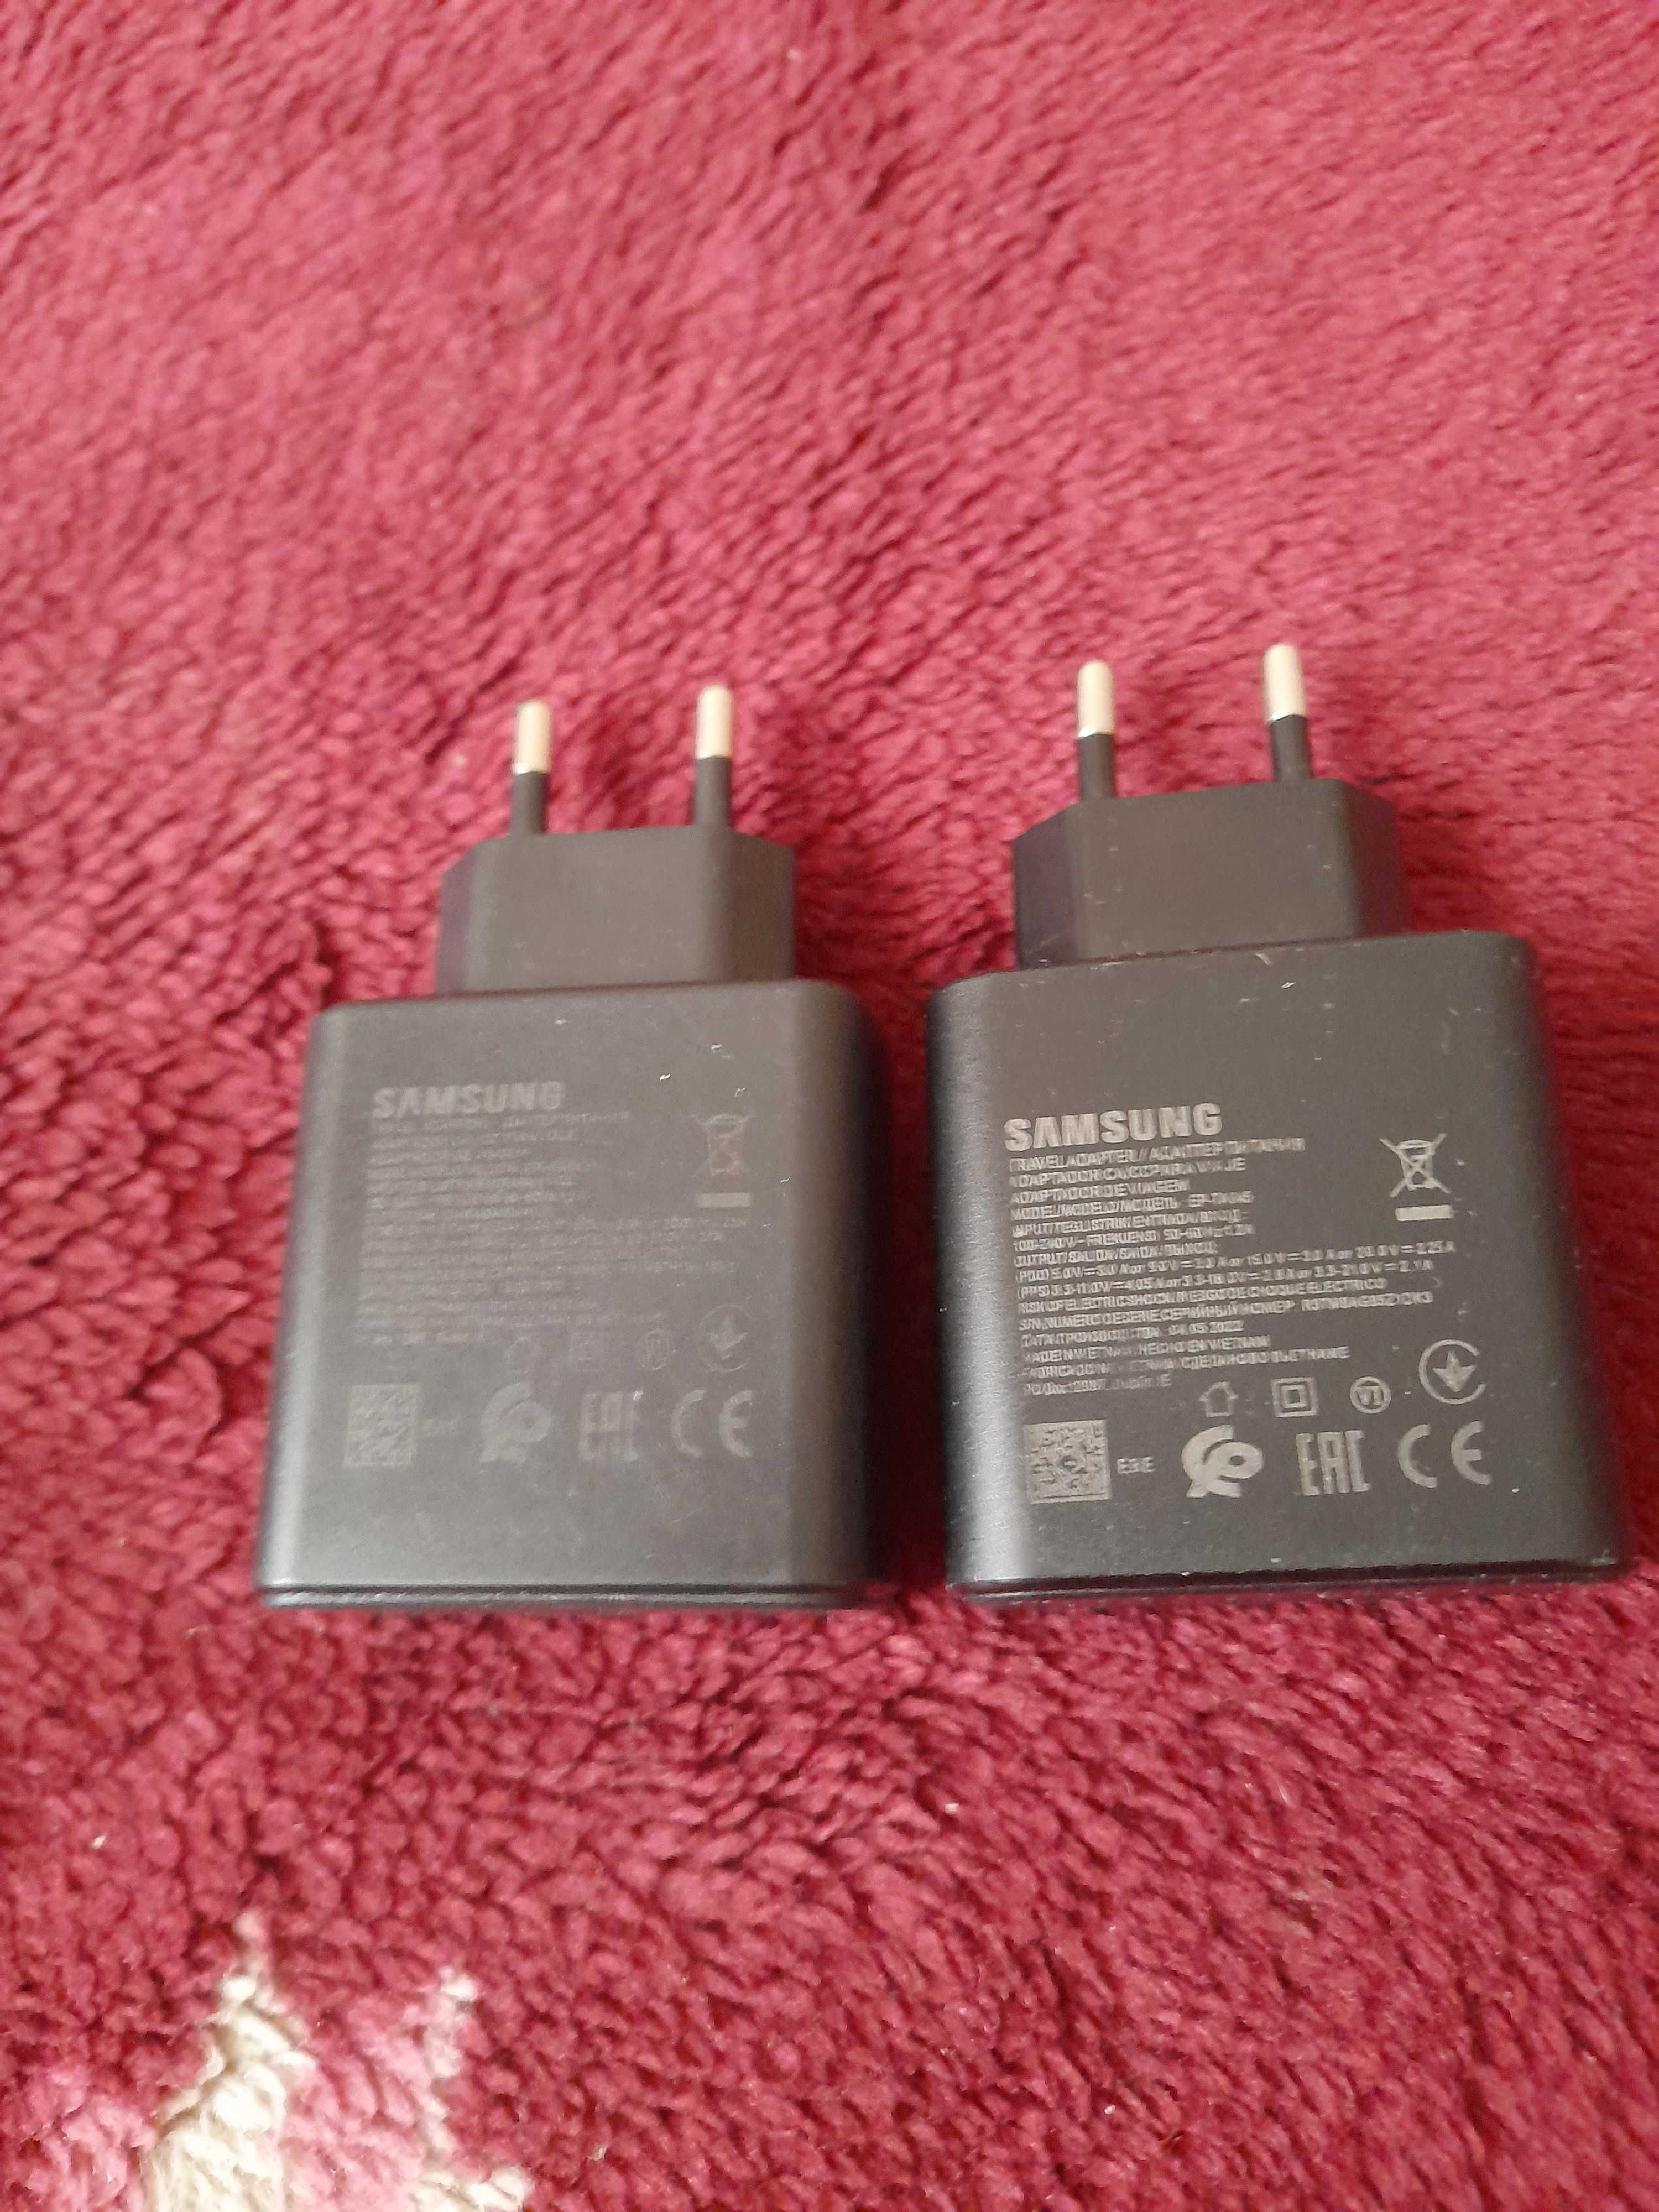 Меняю зарядки Samsung для быстрой зарядки дорогие в количестве 2 штуки